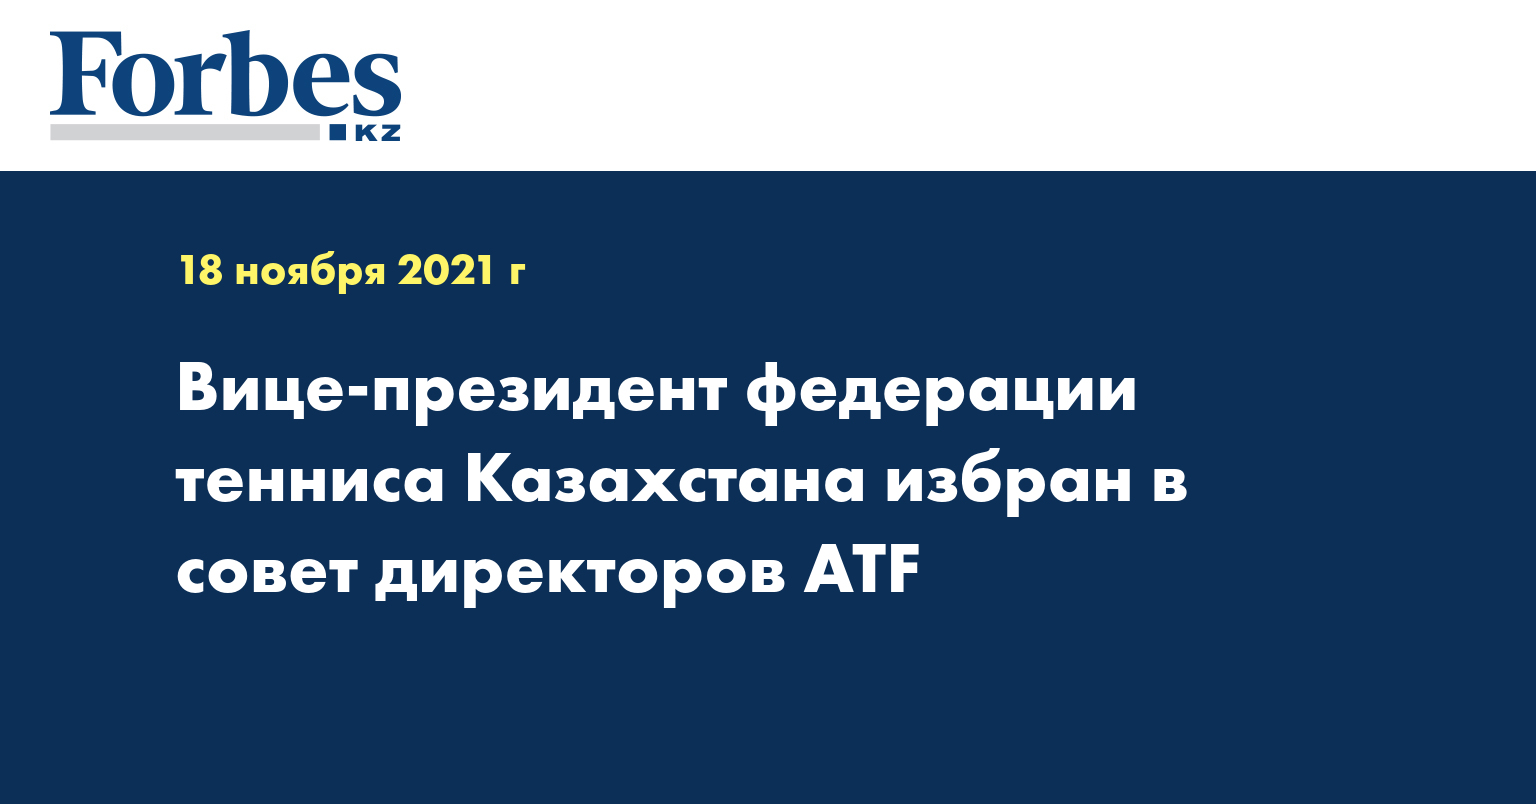 Вице-президент федерации тенниса Казахстана избран в совет директоров ATF 